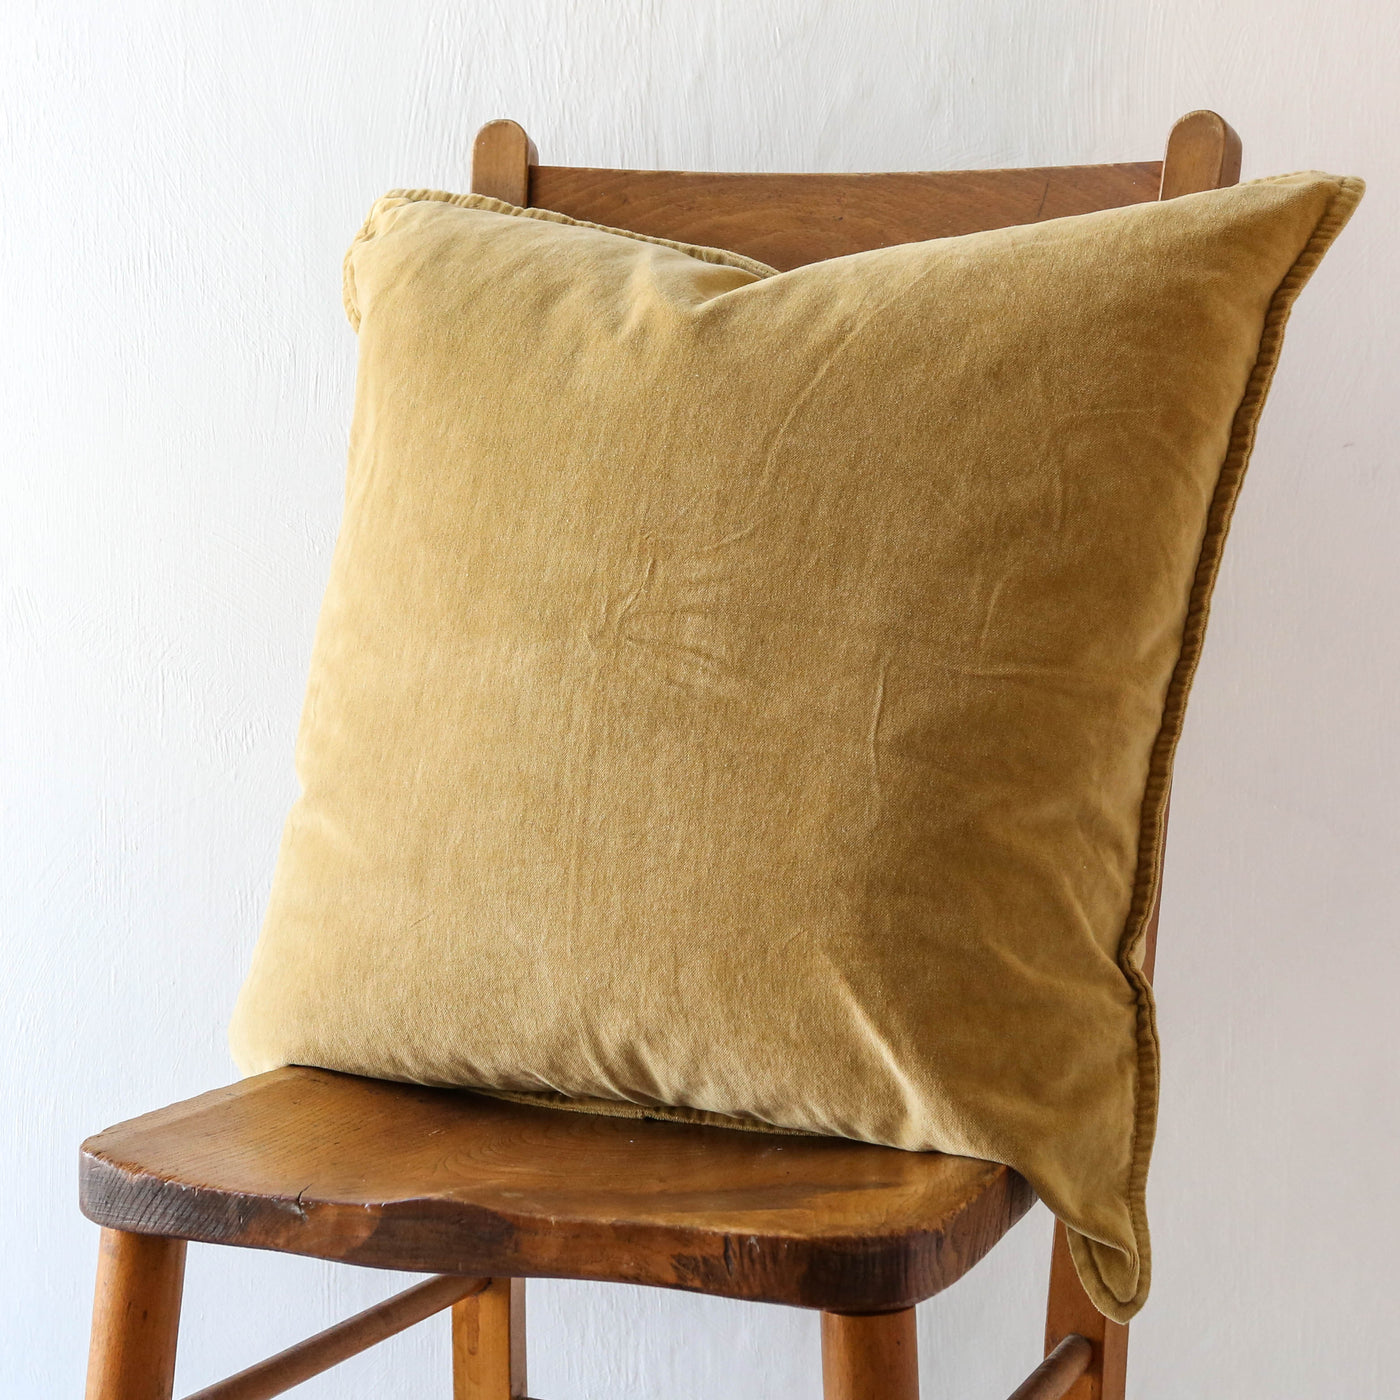 Cotton Velvet Cushion Cover - Mustard